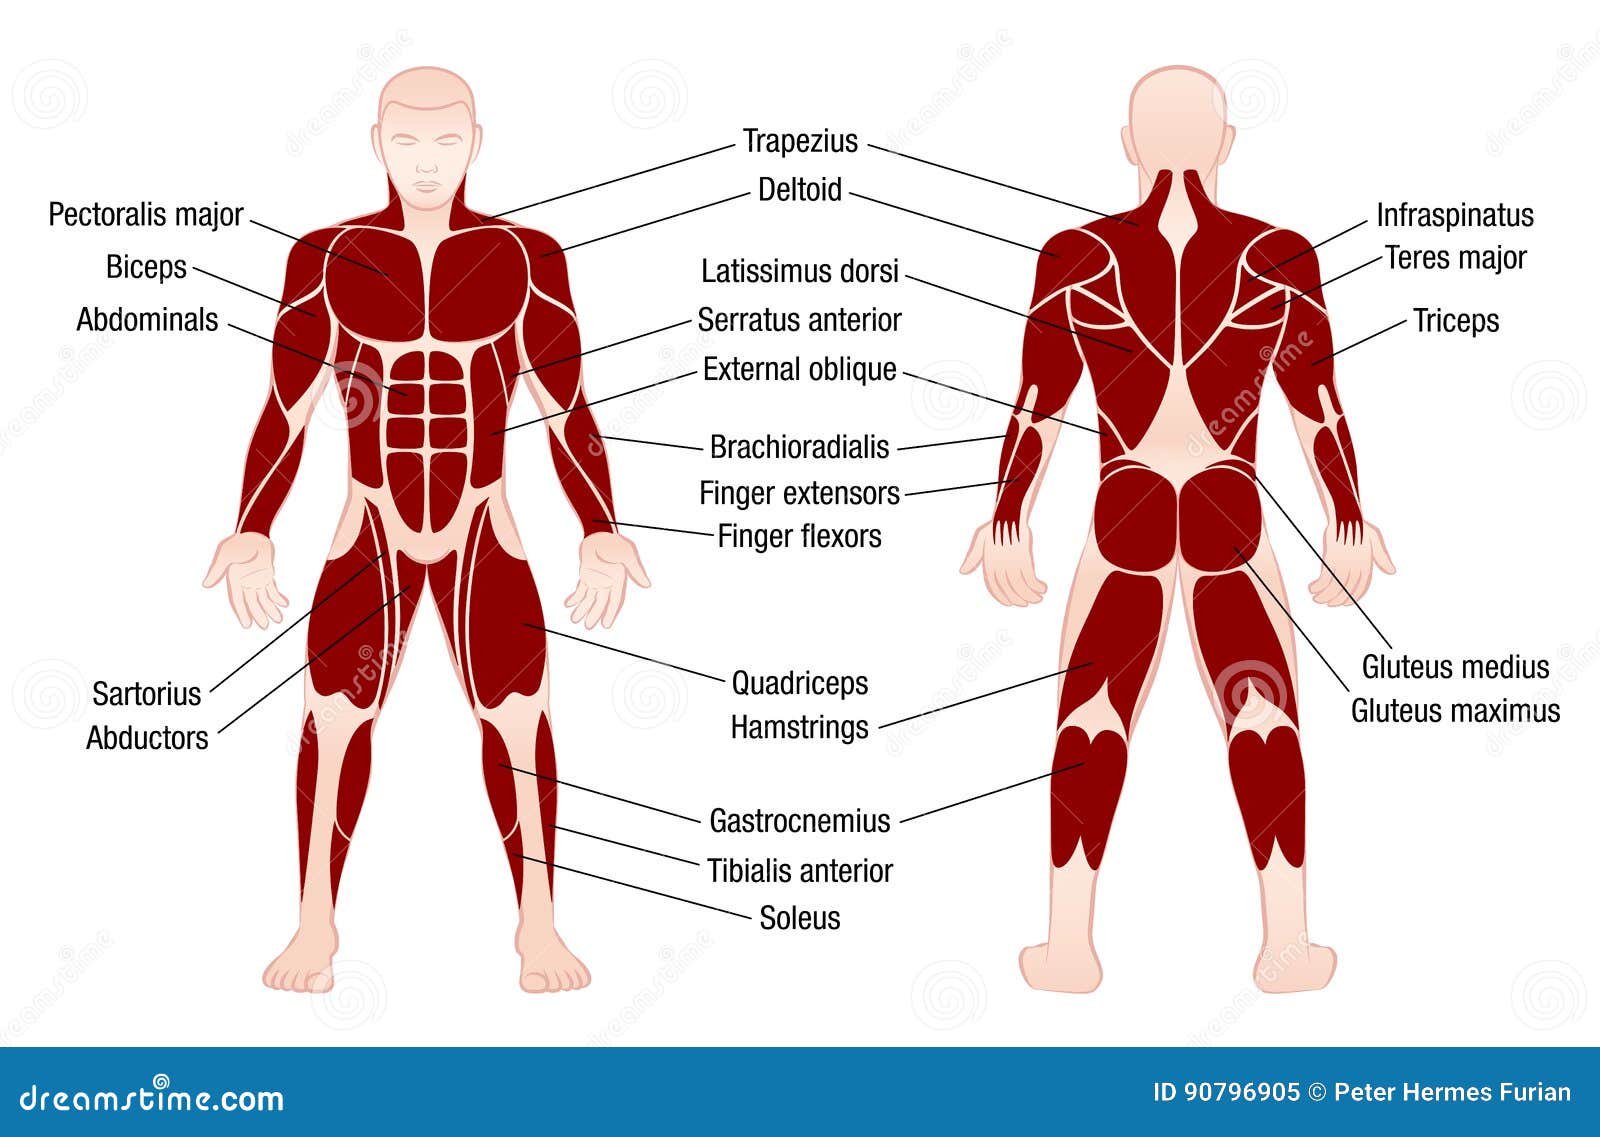 Muscles Chart Description Muscular Body Man Stock Vector ...